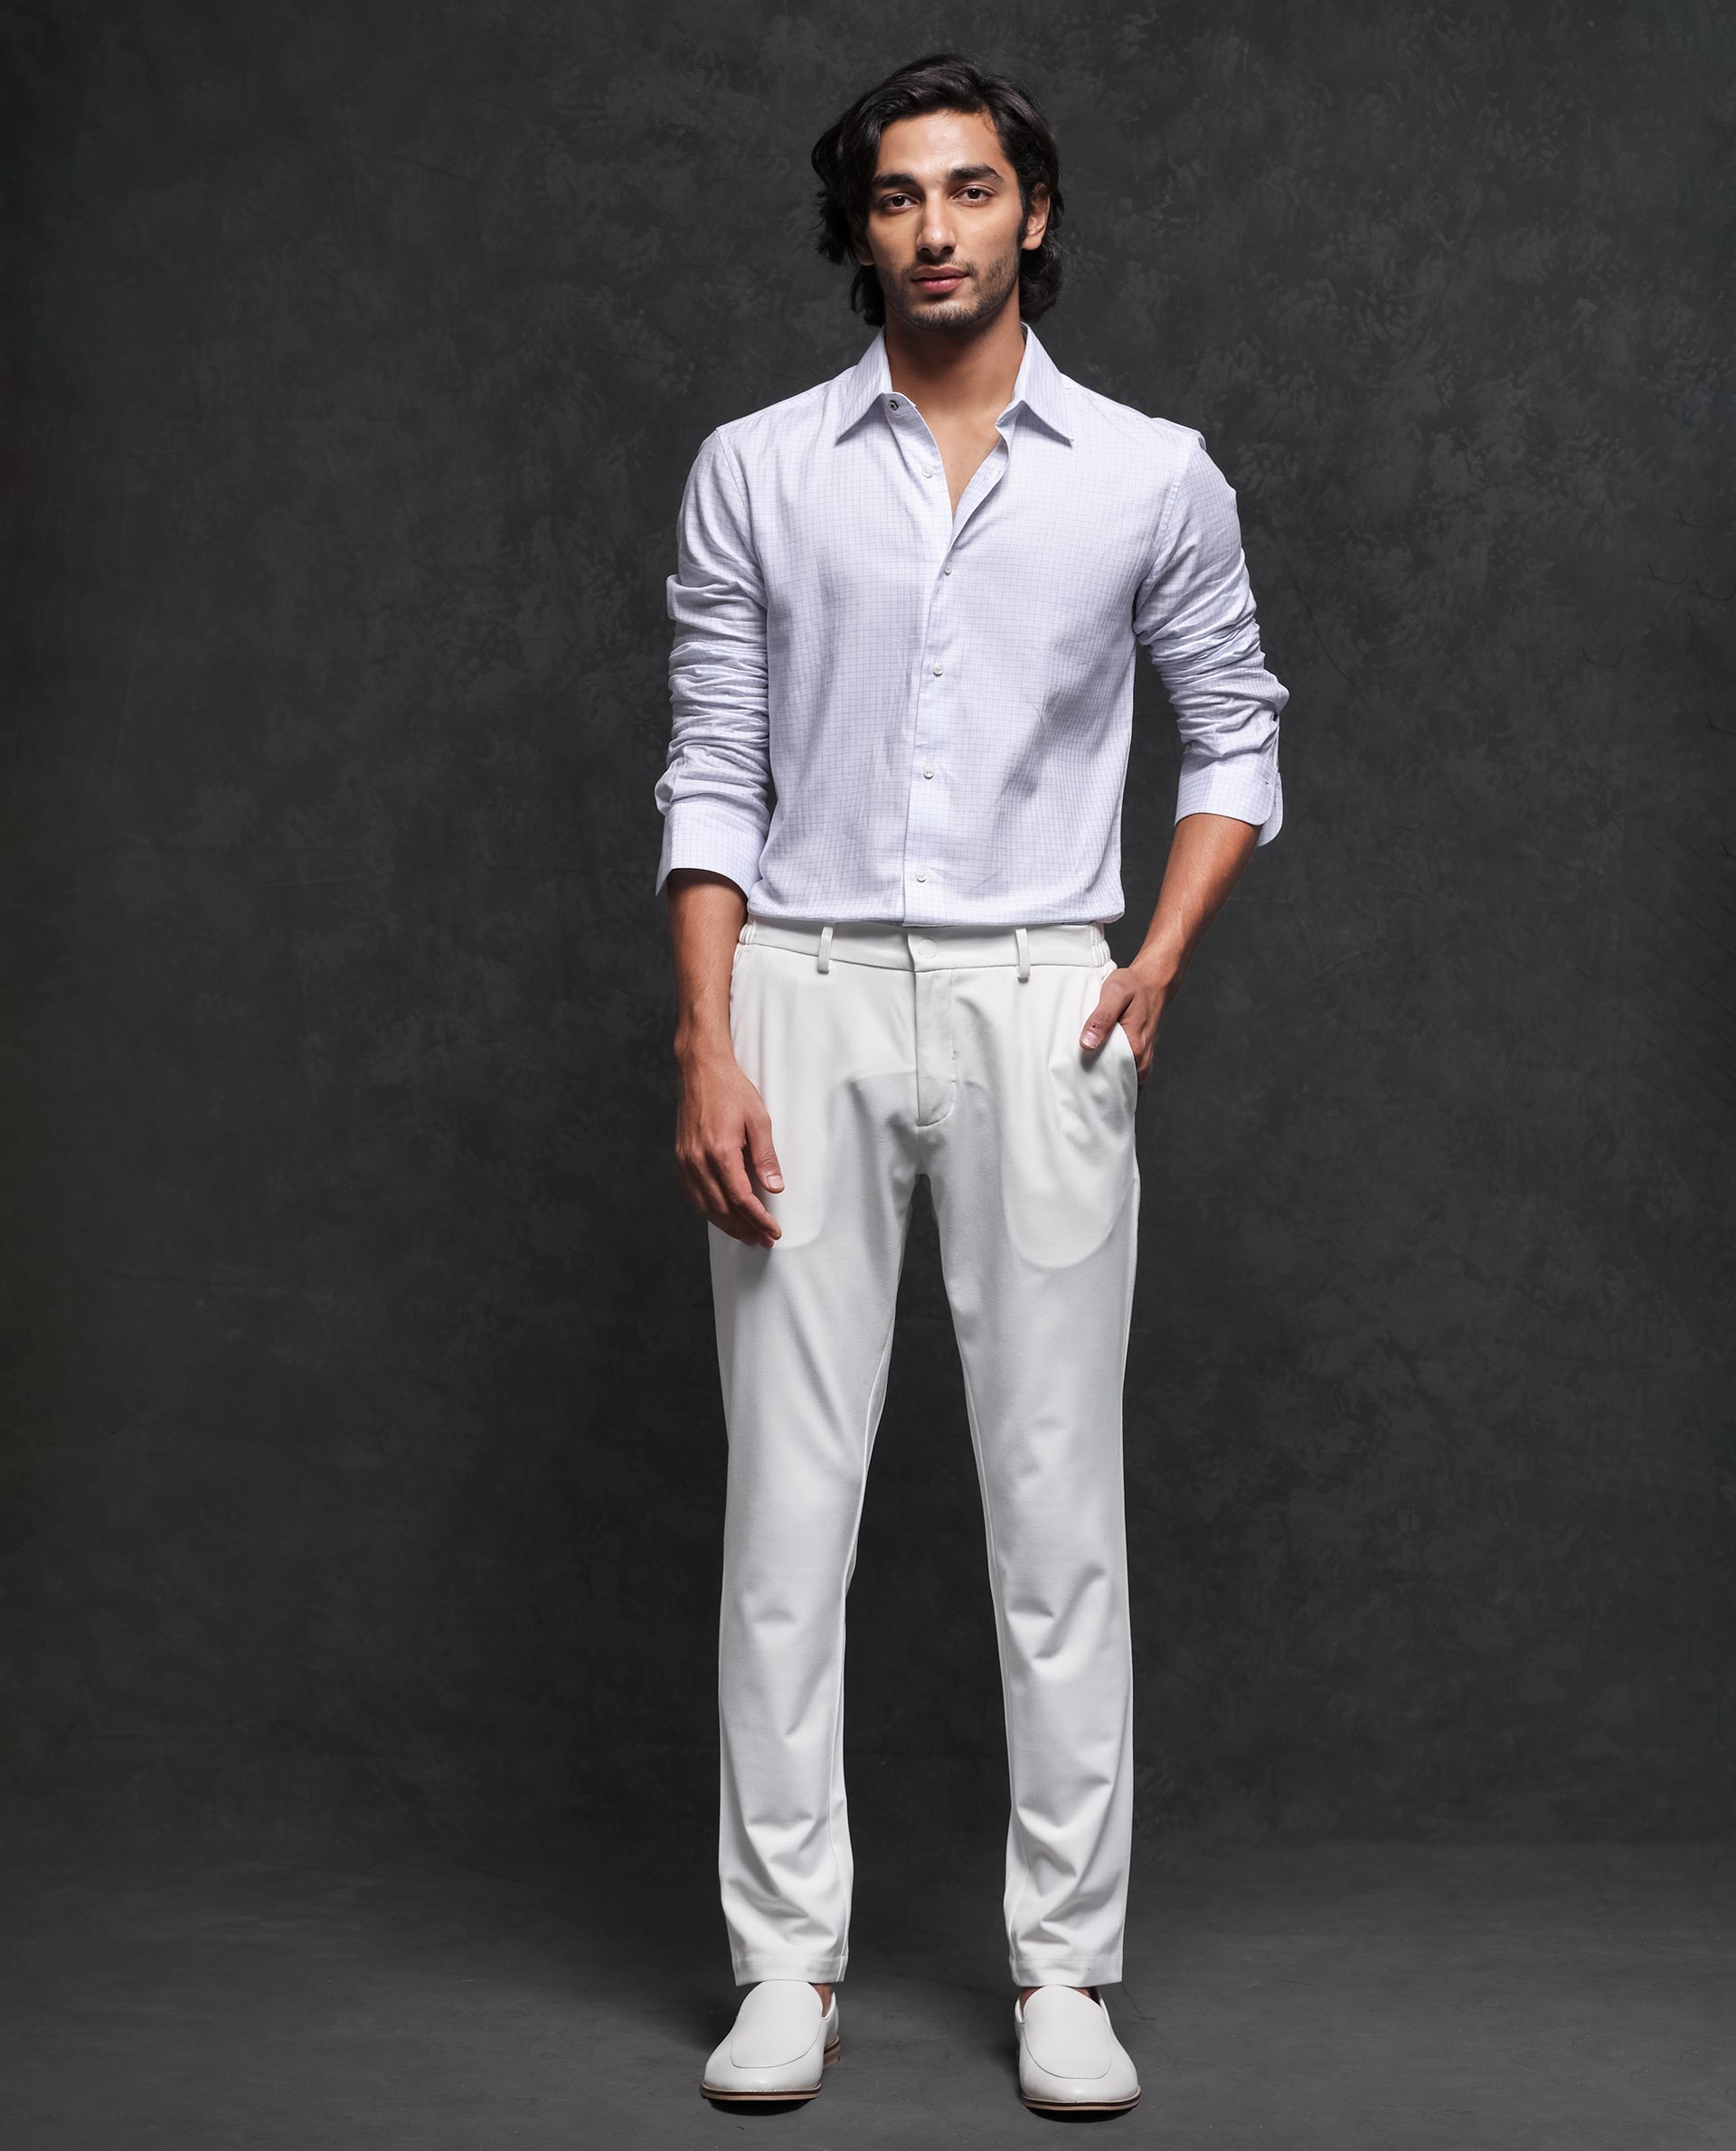 Summer outfit | Men shirt style, White pants men, Pants outfit men